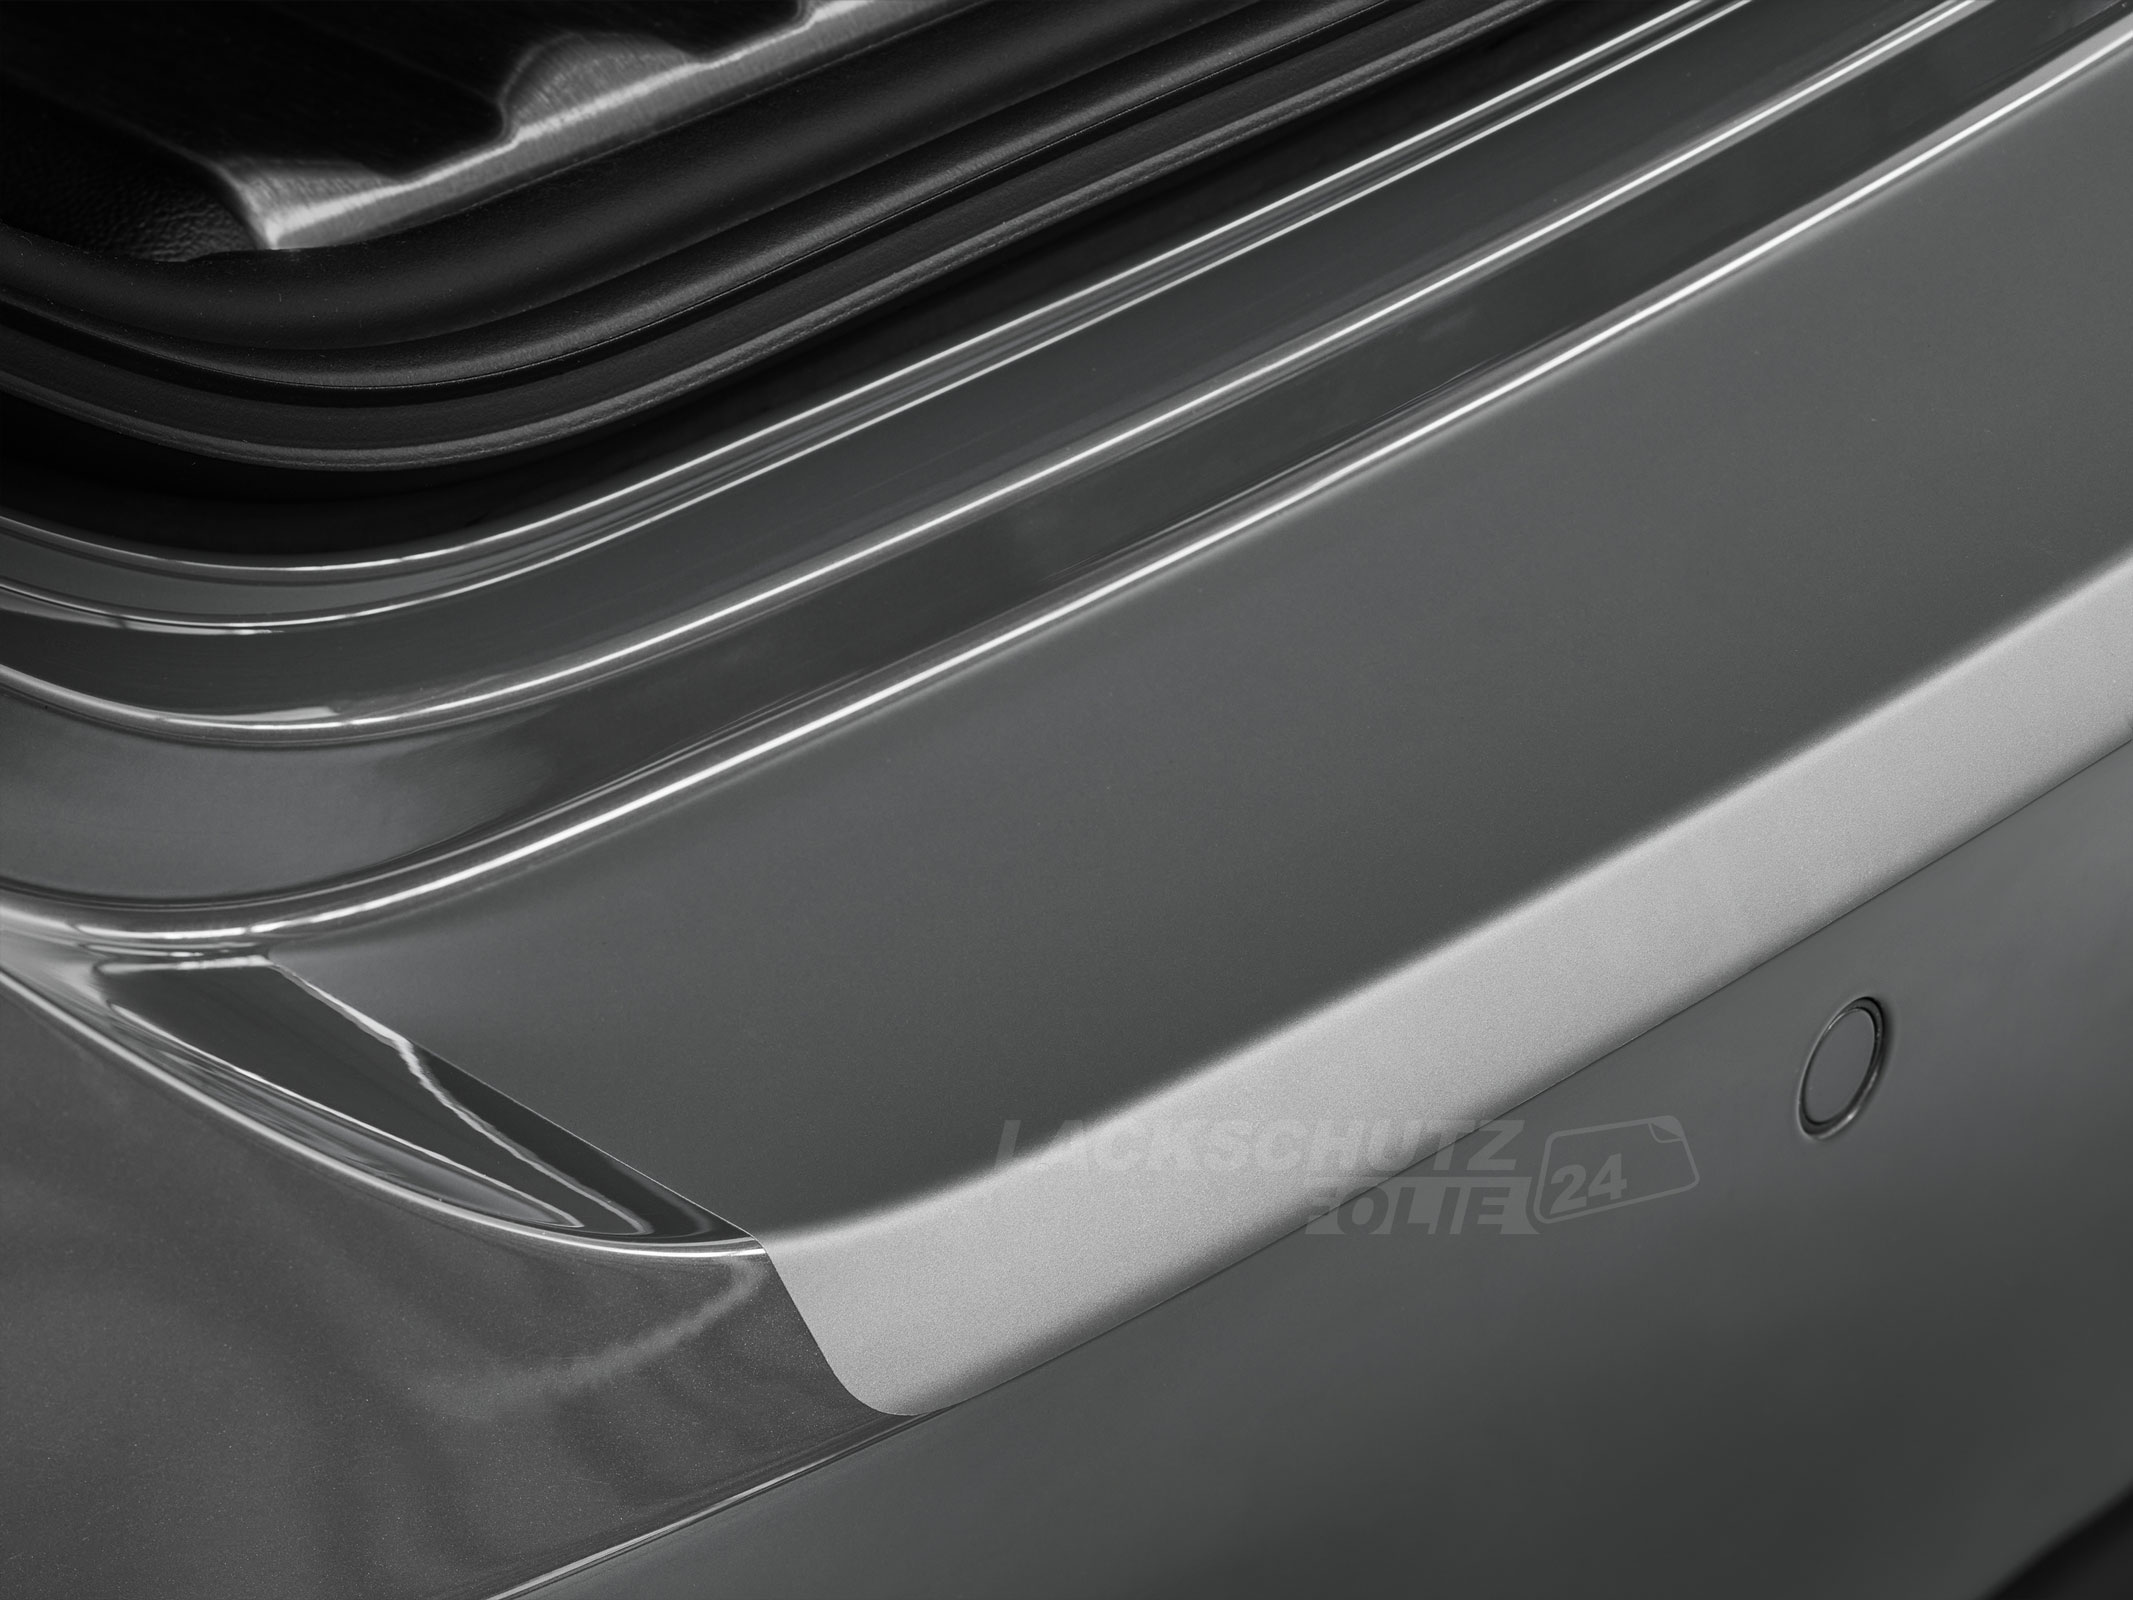 Ladekantenschutzfolie - Transparent Glatt MATT für Dodge Caliber ab BJ 2007